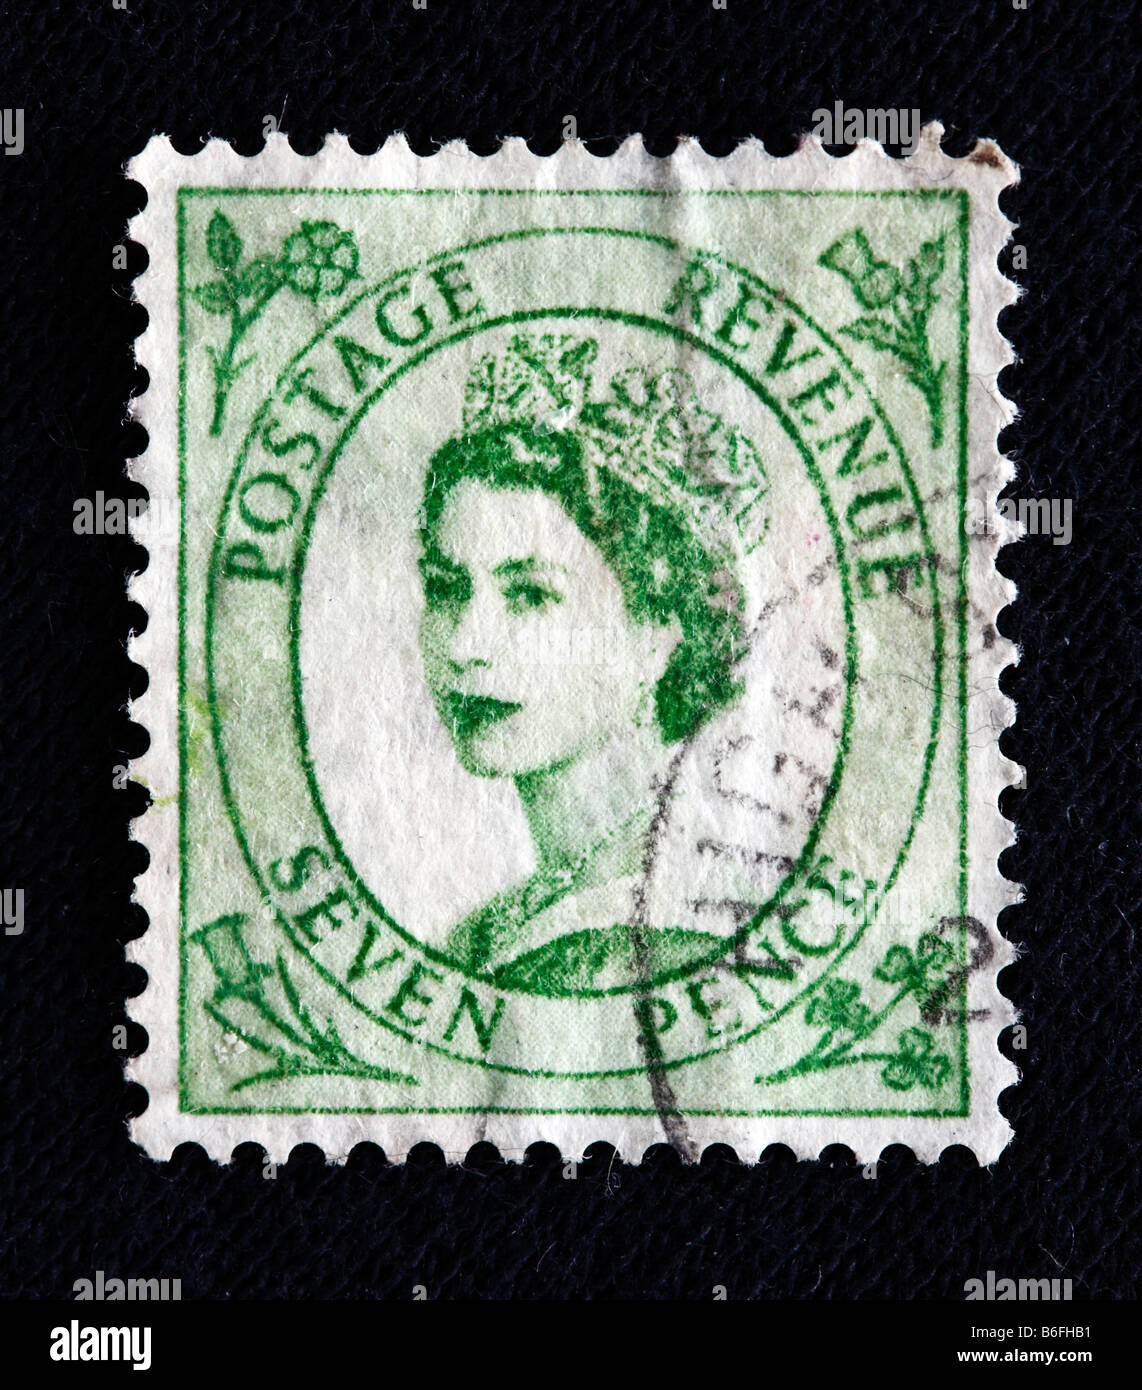 Königin Elizabeth II des Vereinigten Königreichs (1952, präsentieren), Briefmarke, UK Stockfoto